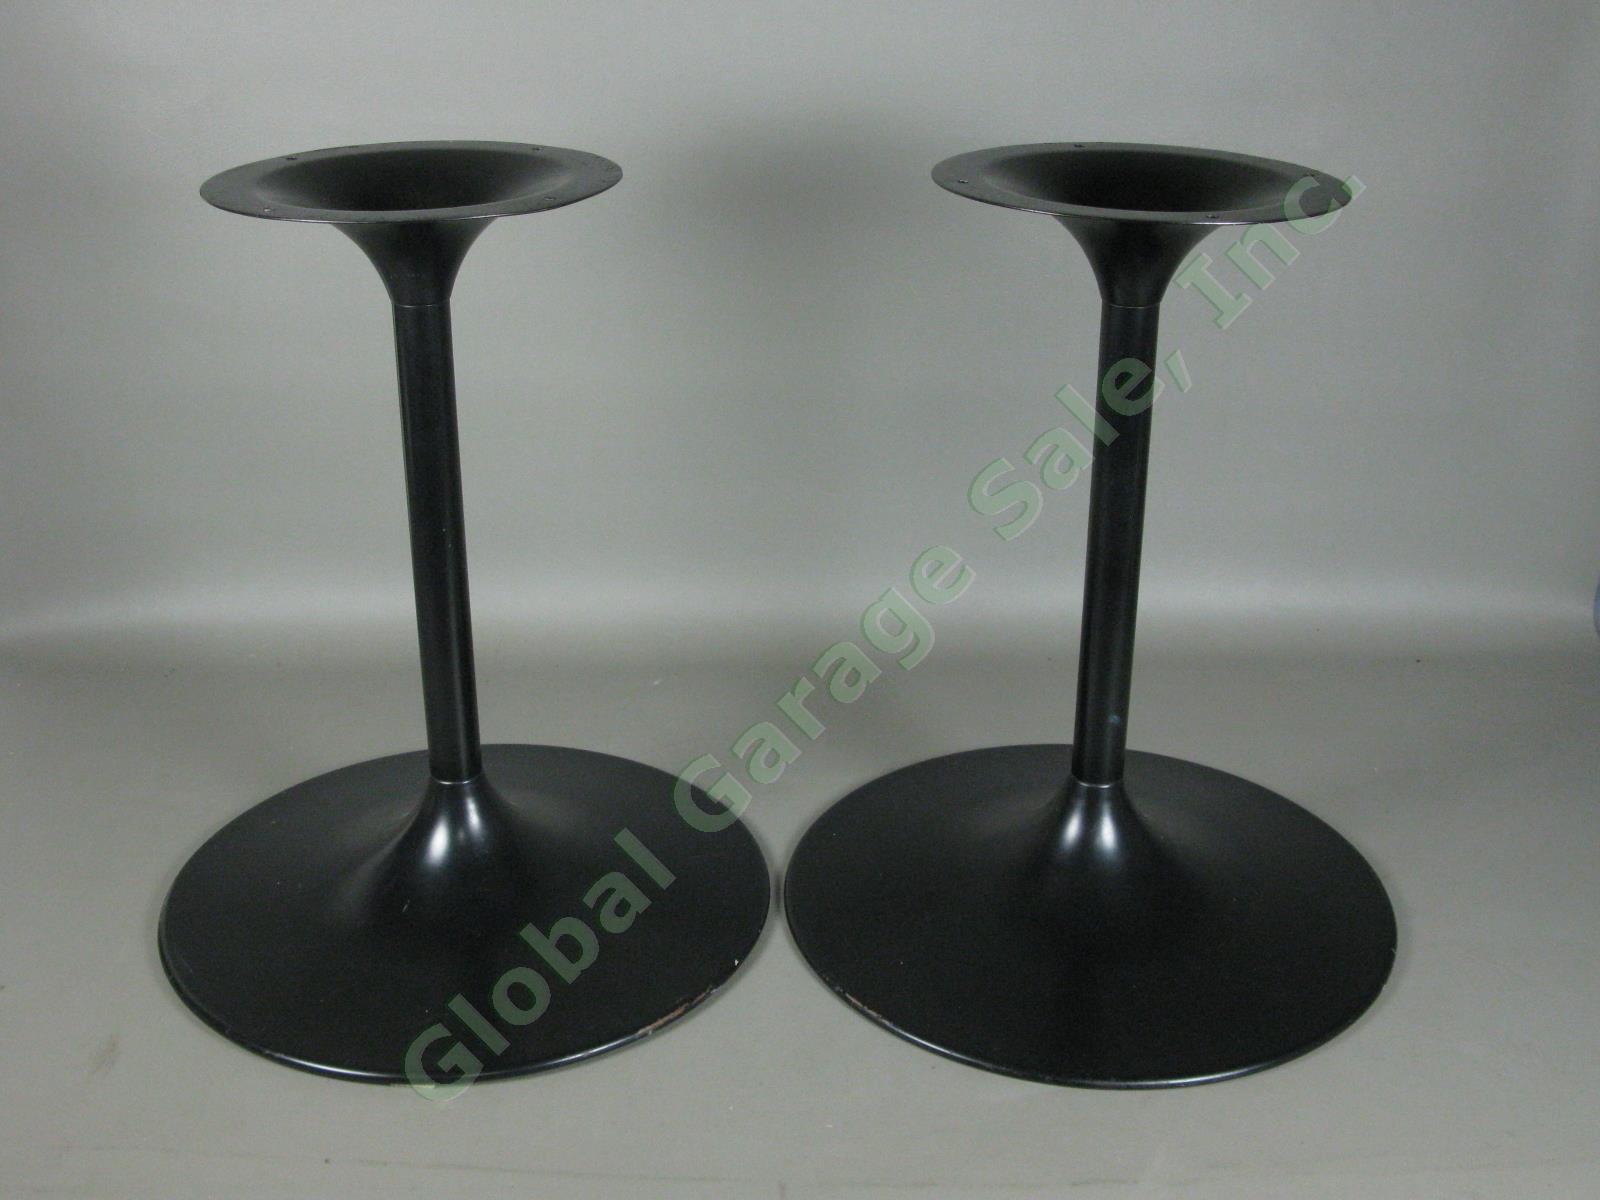 Bose 901 Series V Speaker Stands Black Tulip Pedestal 18" Tall 4-Holes No Res!!